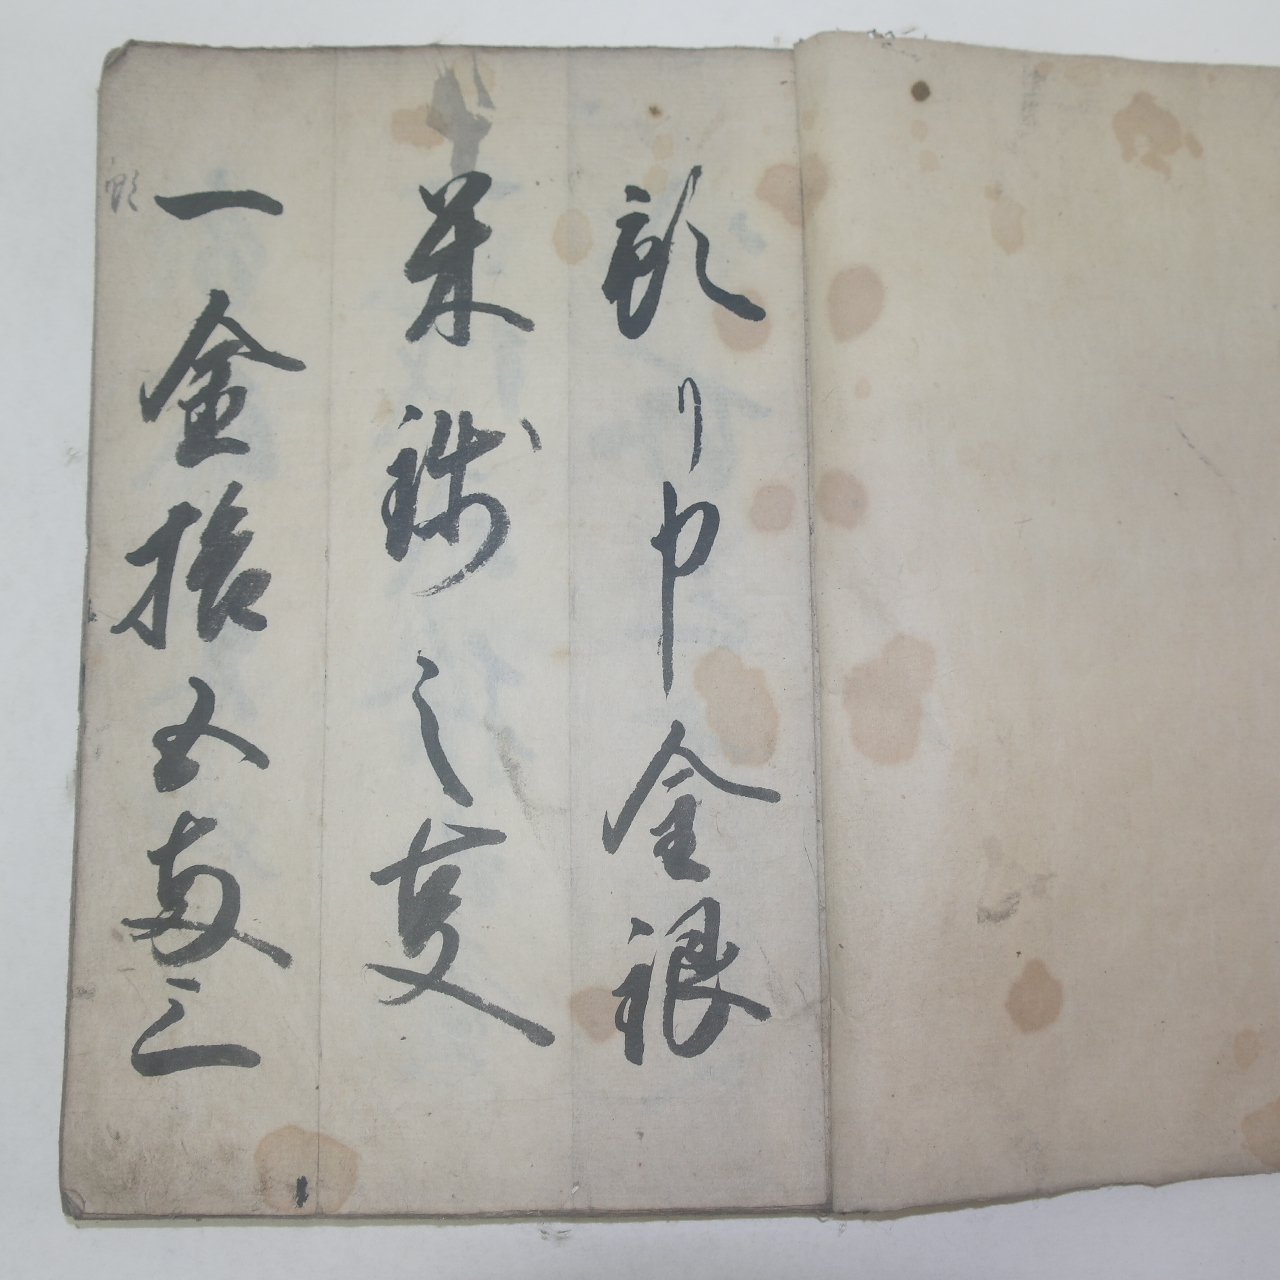 1854년(嘉永7年) 일본고필사본 어평본(御平本) 1책